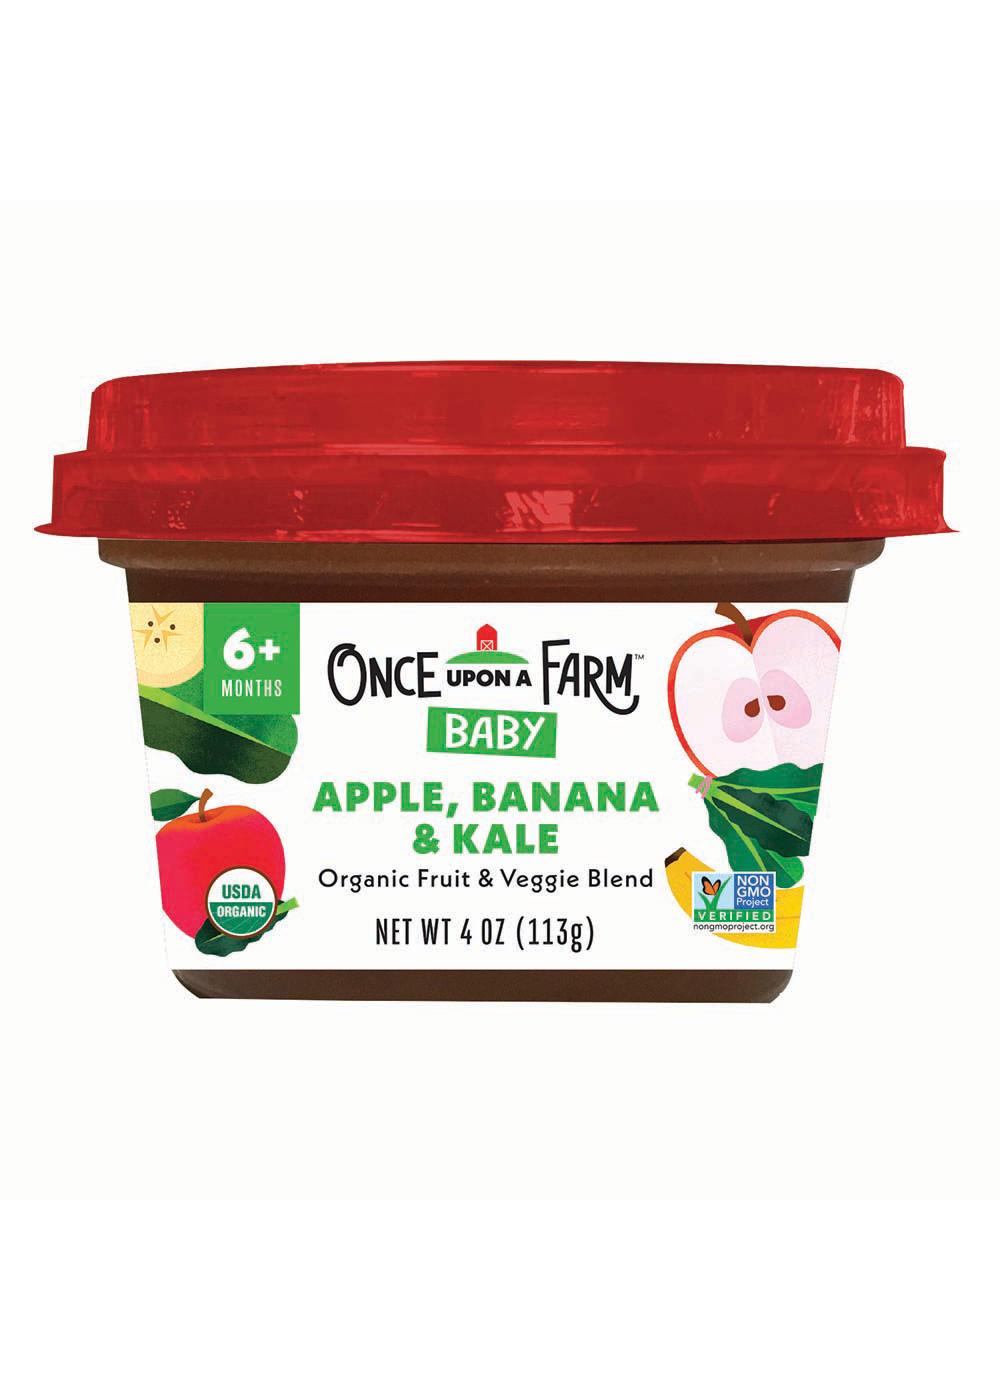 Once Upon a Farm Organic Baby Food - Apple Banana & Kale; image 1 of 2